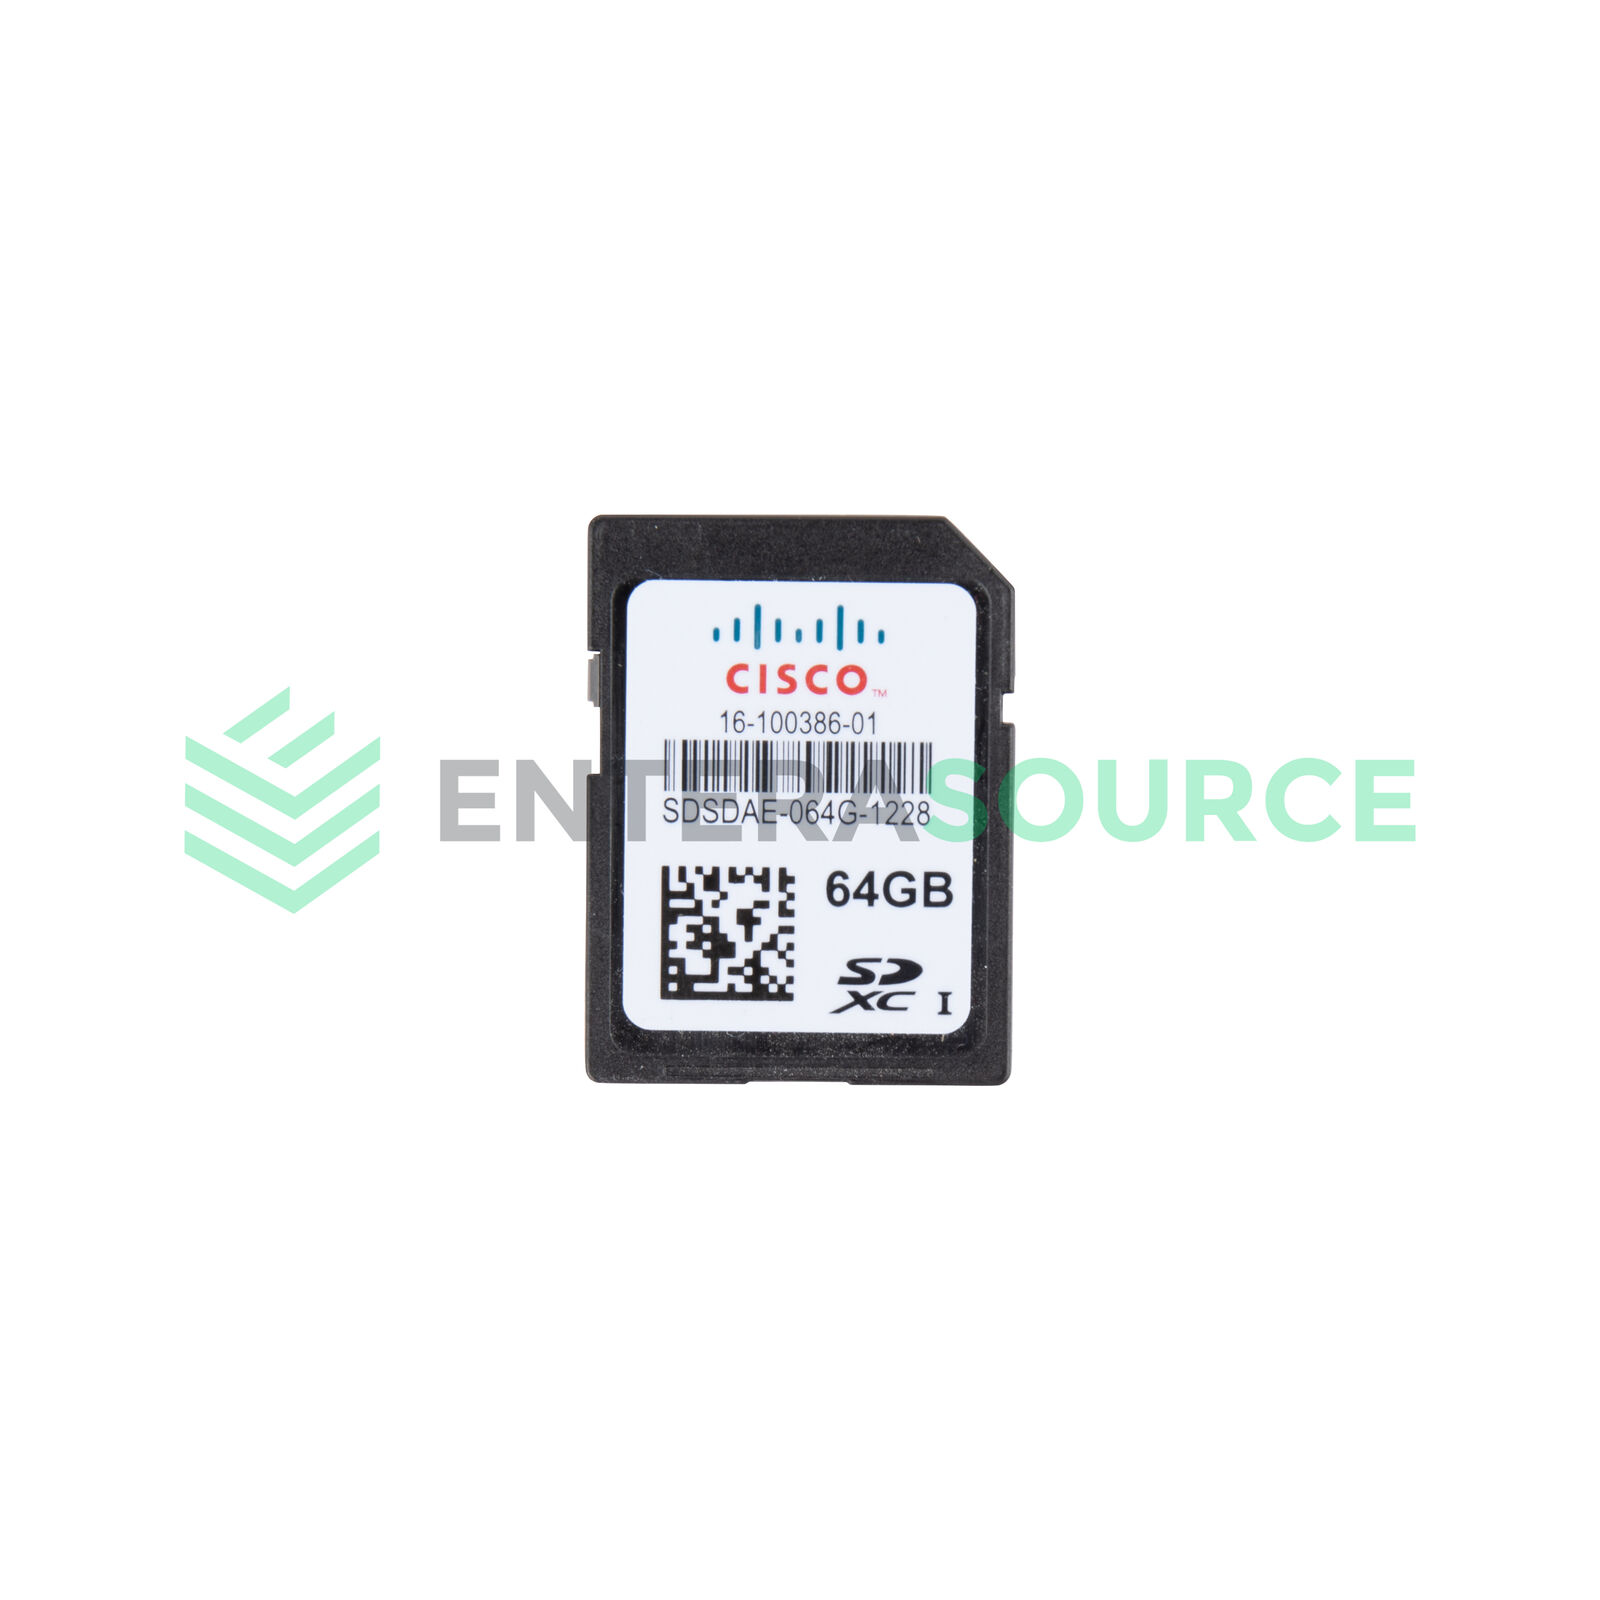 Cisco SDSDAE-064G-1228 UCS 64GB Flash SD Card Module | 16-100386-01